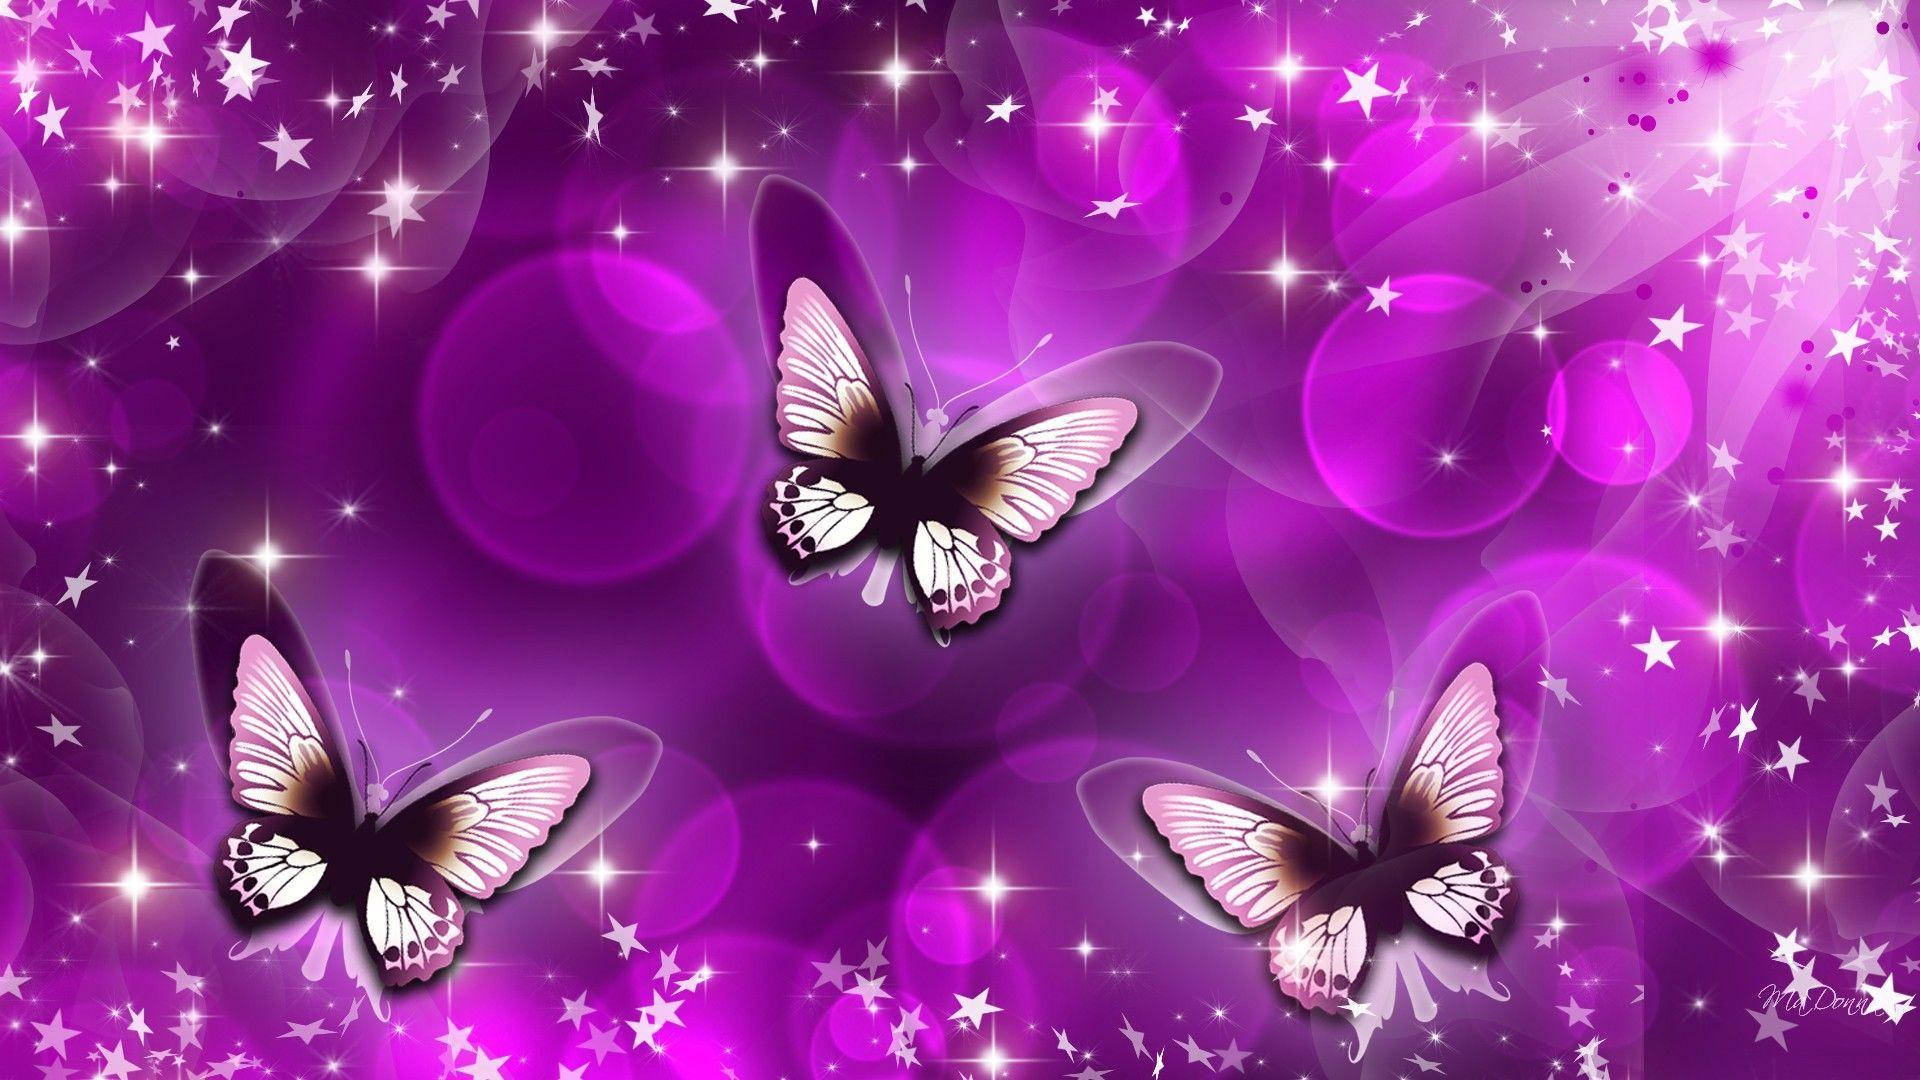 Free Purple Butterfly Wallpaper Downloads, [100+] Purple Butterfly  Wallpapers for FREE 